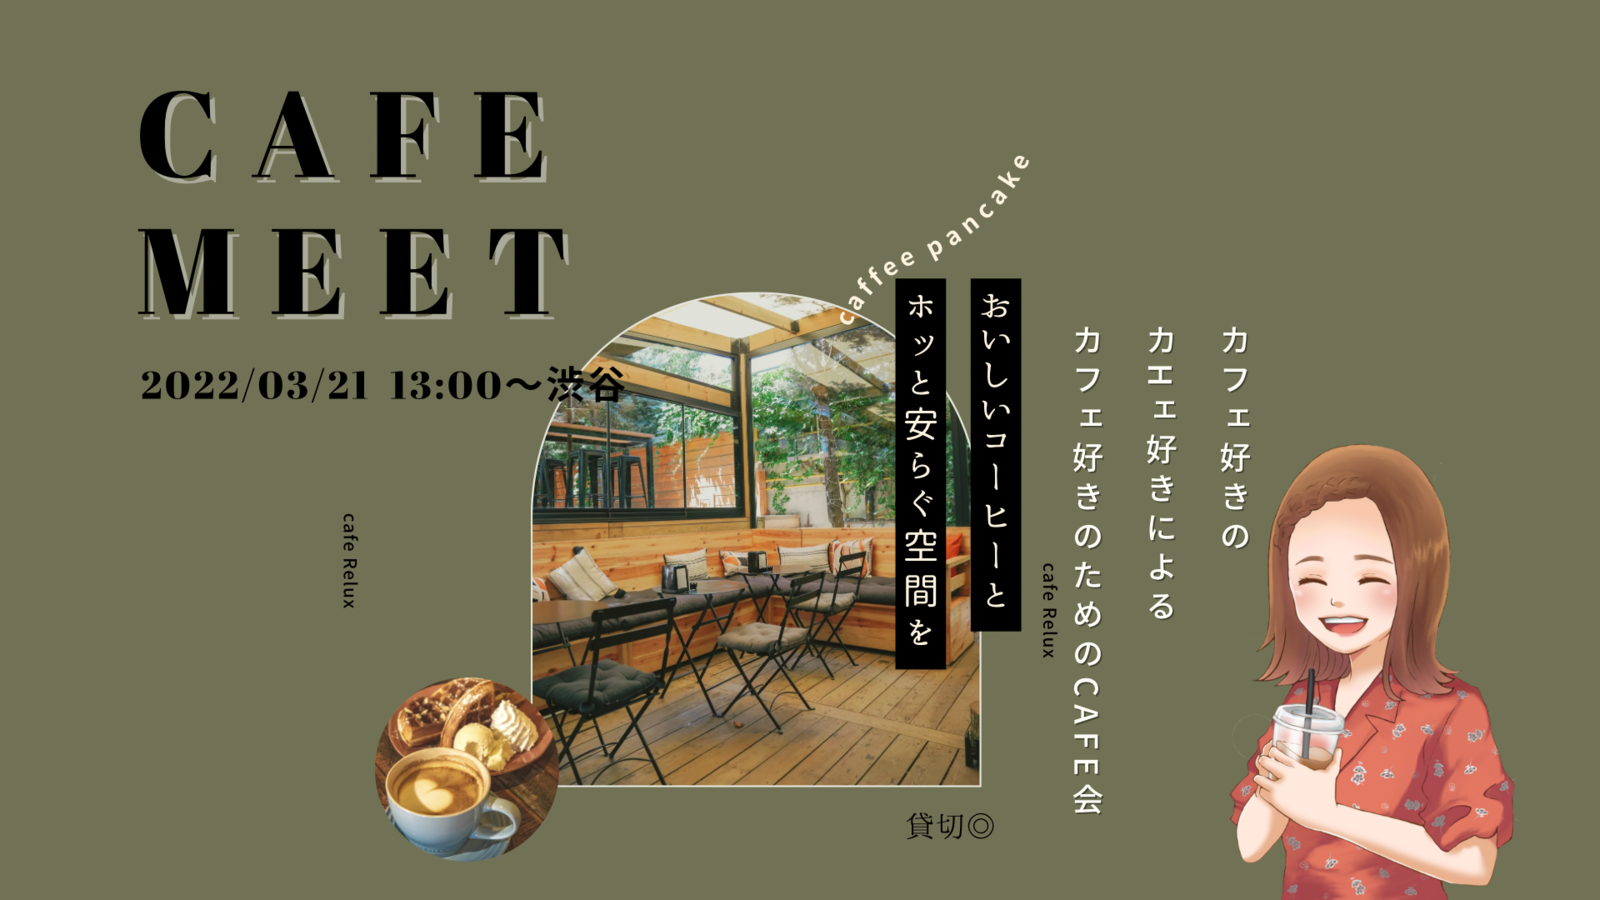 3/21cafe meet〜日常に癒しを〜